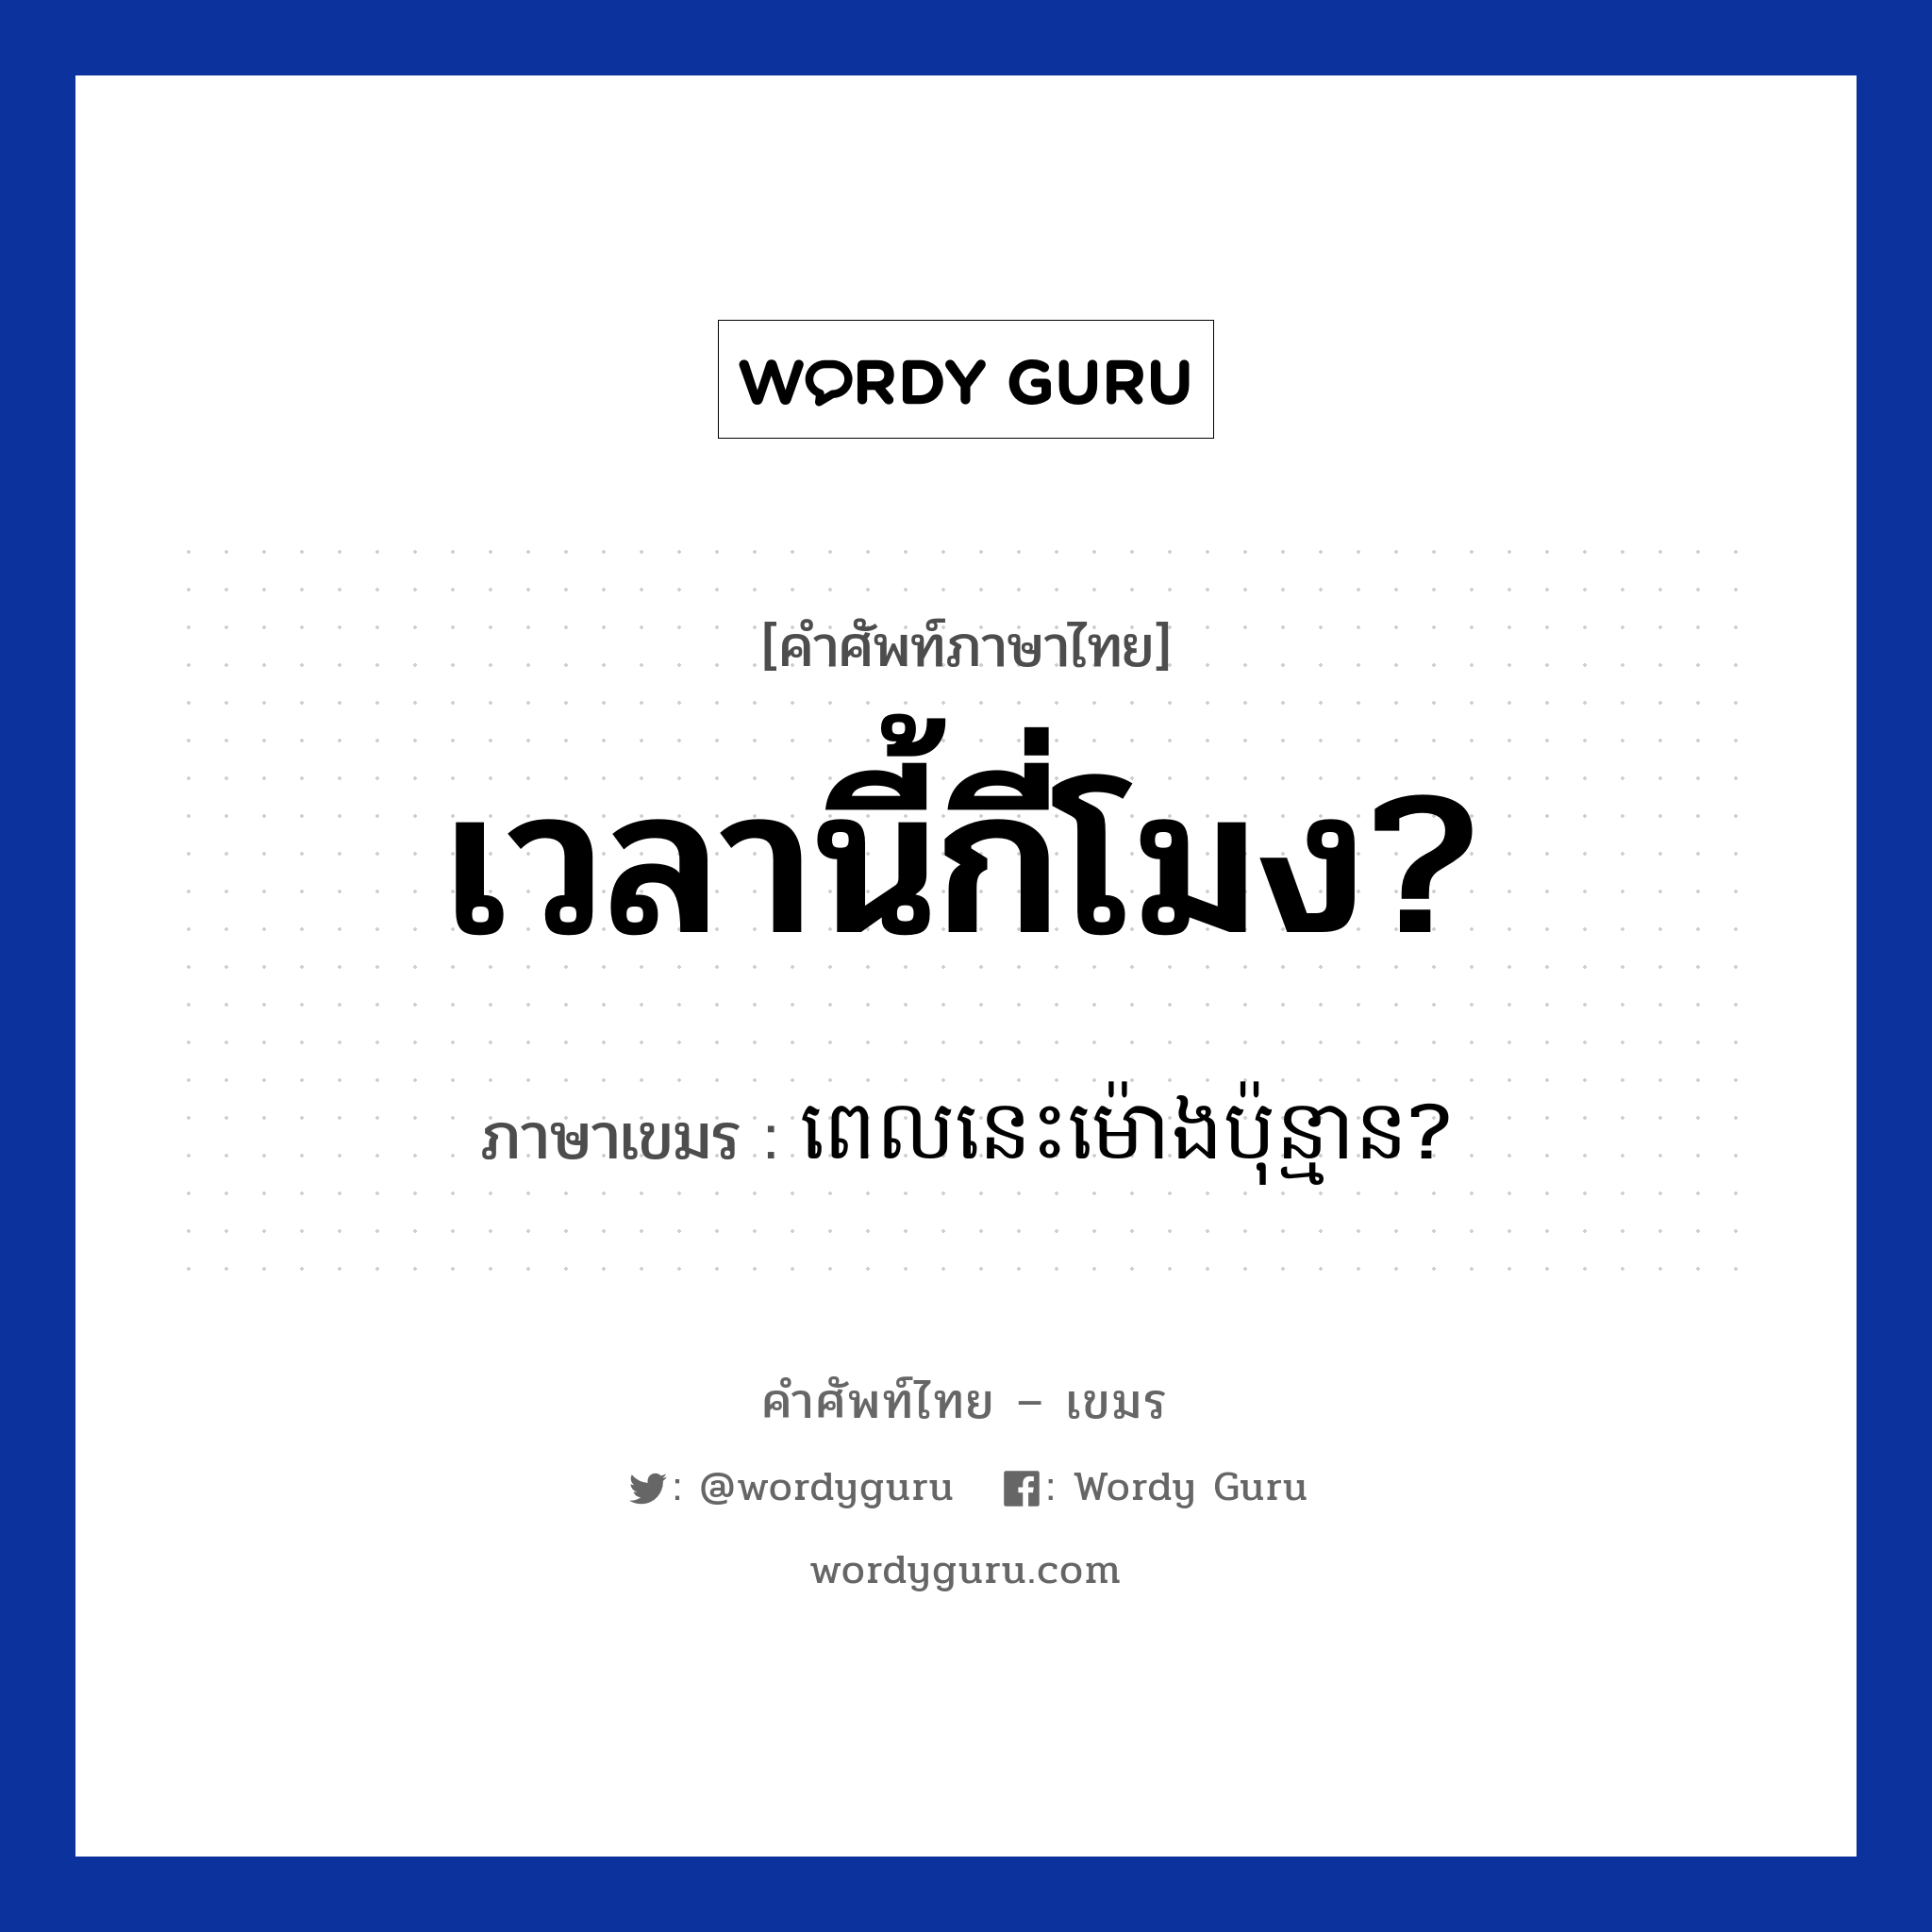 เวลานี้กี่โมง? ภาษาเขมรคืออะไร, คำศัพท์ภาษาไทย - เขมร เวลานี้กี่โมง? ภาษาเขมร ពេលនេះម៉ោងប៉ុន្មាន? หมวด บทสนทนาเกี่ยวกับวัน เวลา Pel nis mong punman? หมวด บทสนทนาเกี่ยวกับวัน เวลา